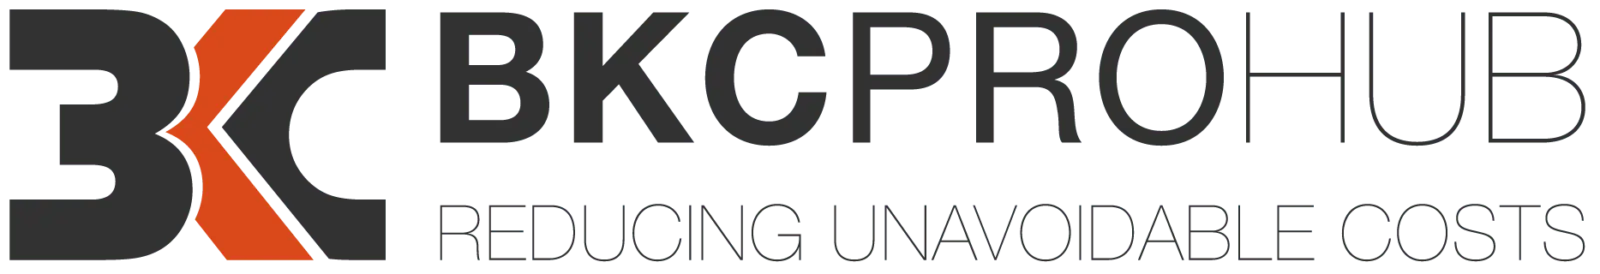 bkcprohub logo